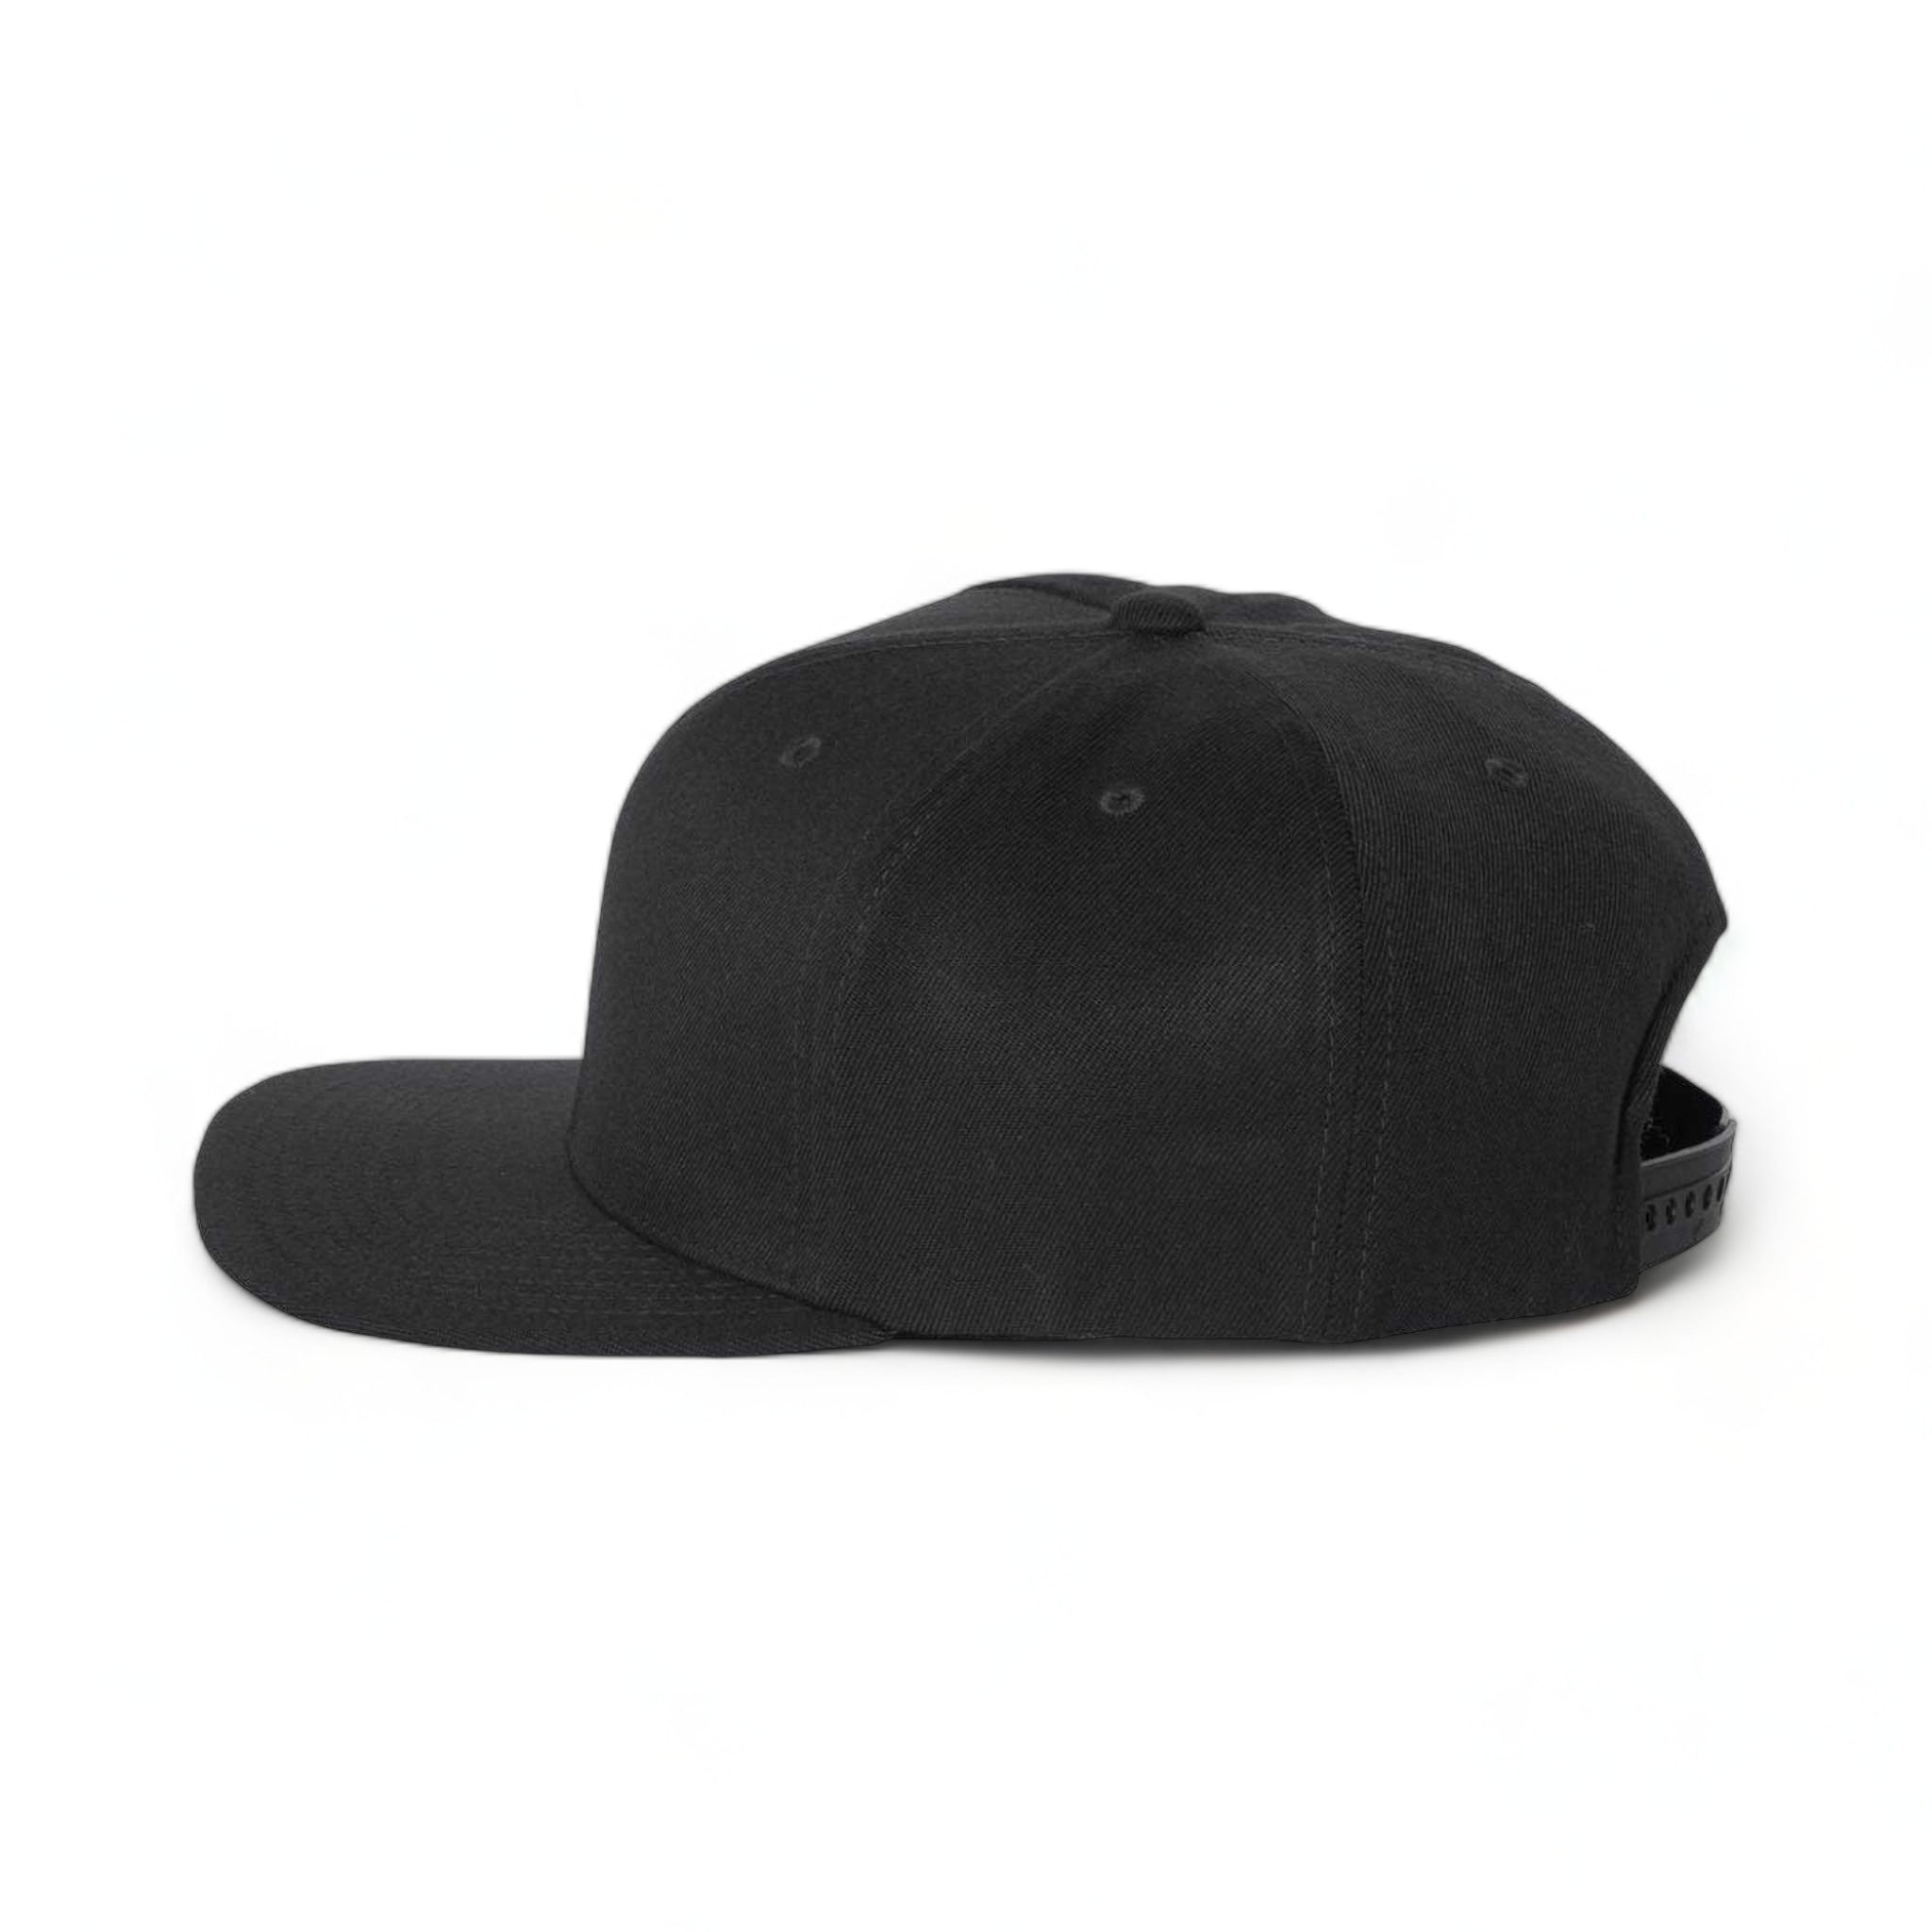 Side view of Flexfit 110F custom hat in black